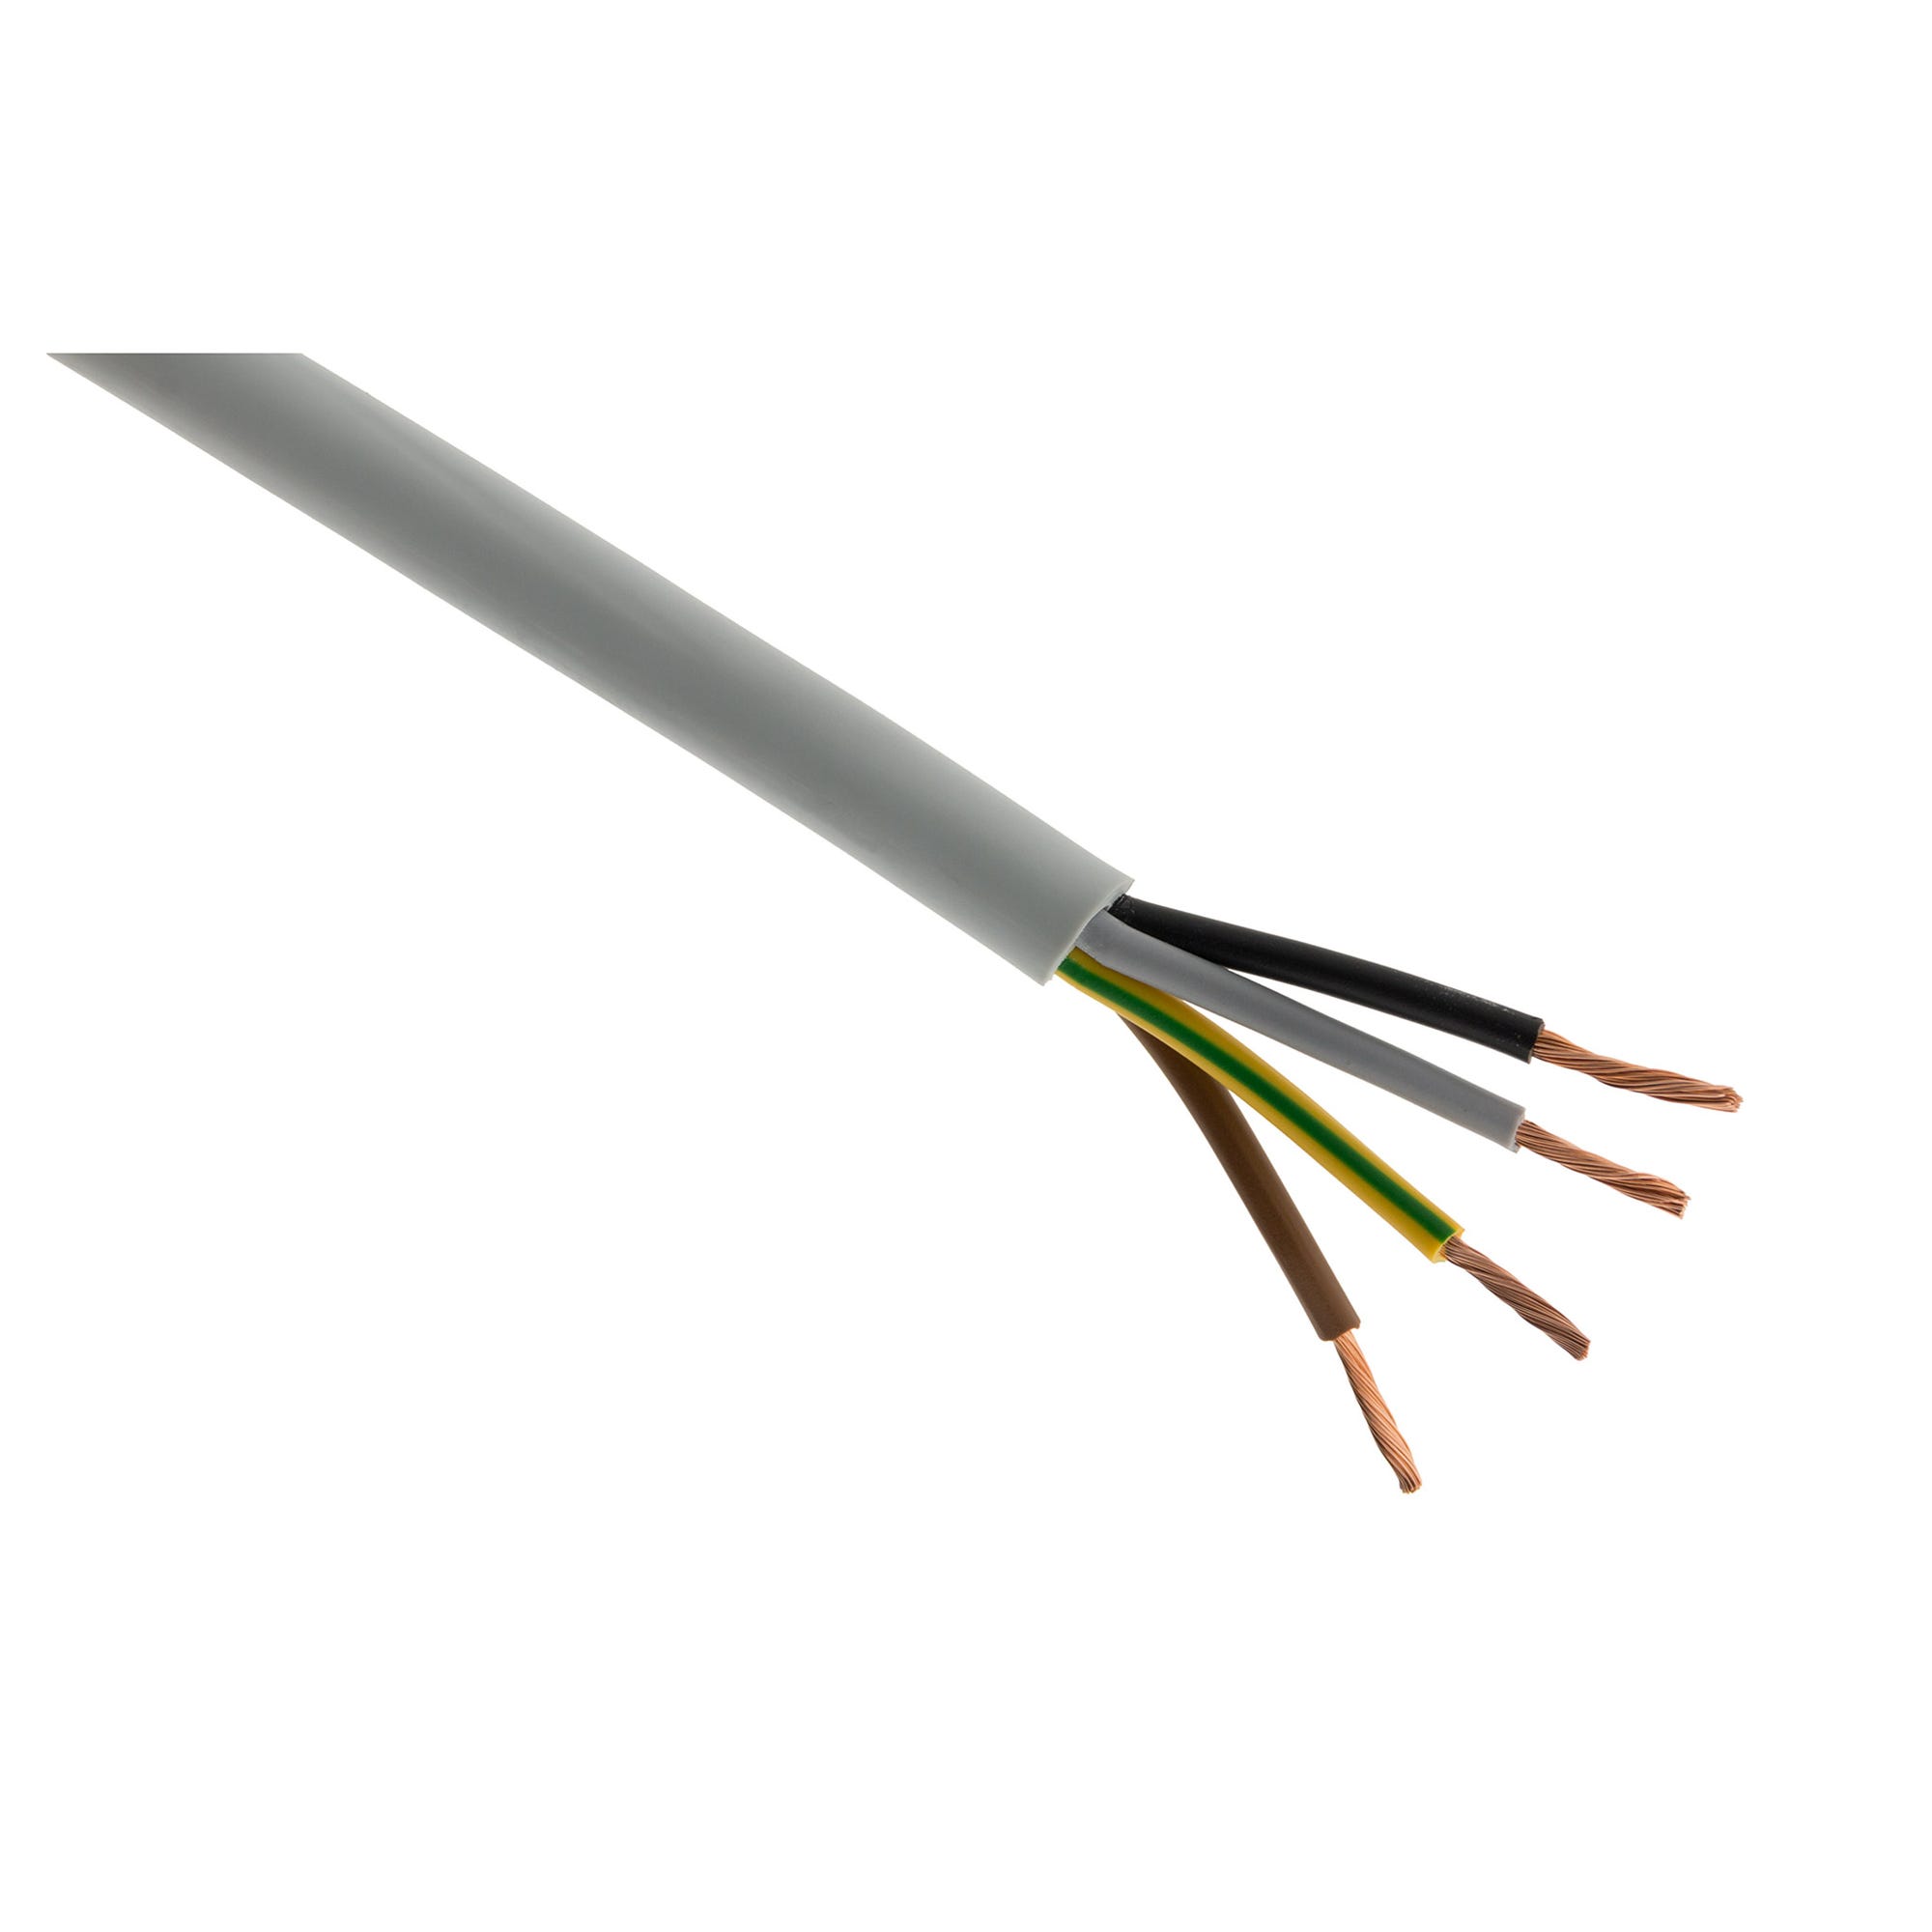 Câble d'alimentation électrique HO5VV-F 5G2,5mm² Gris - 100m 0